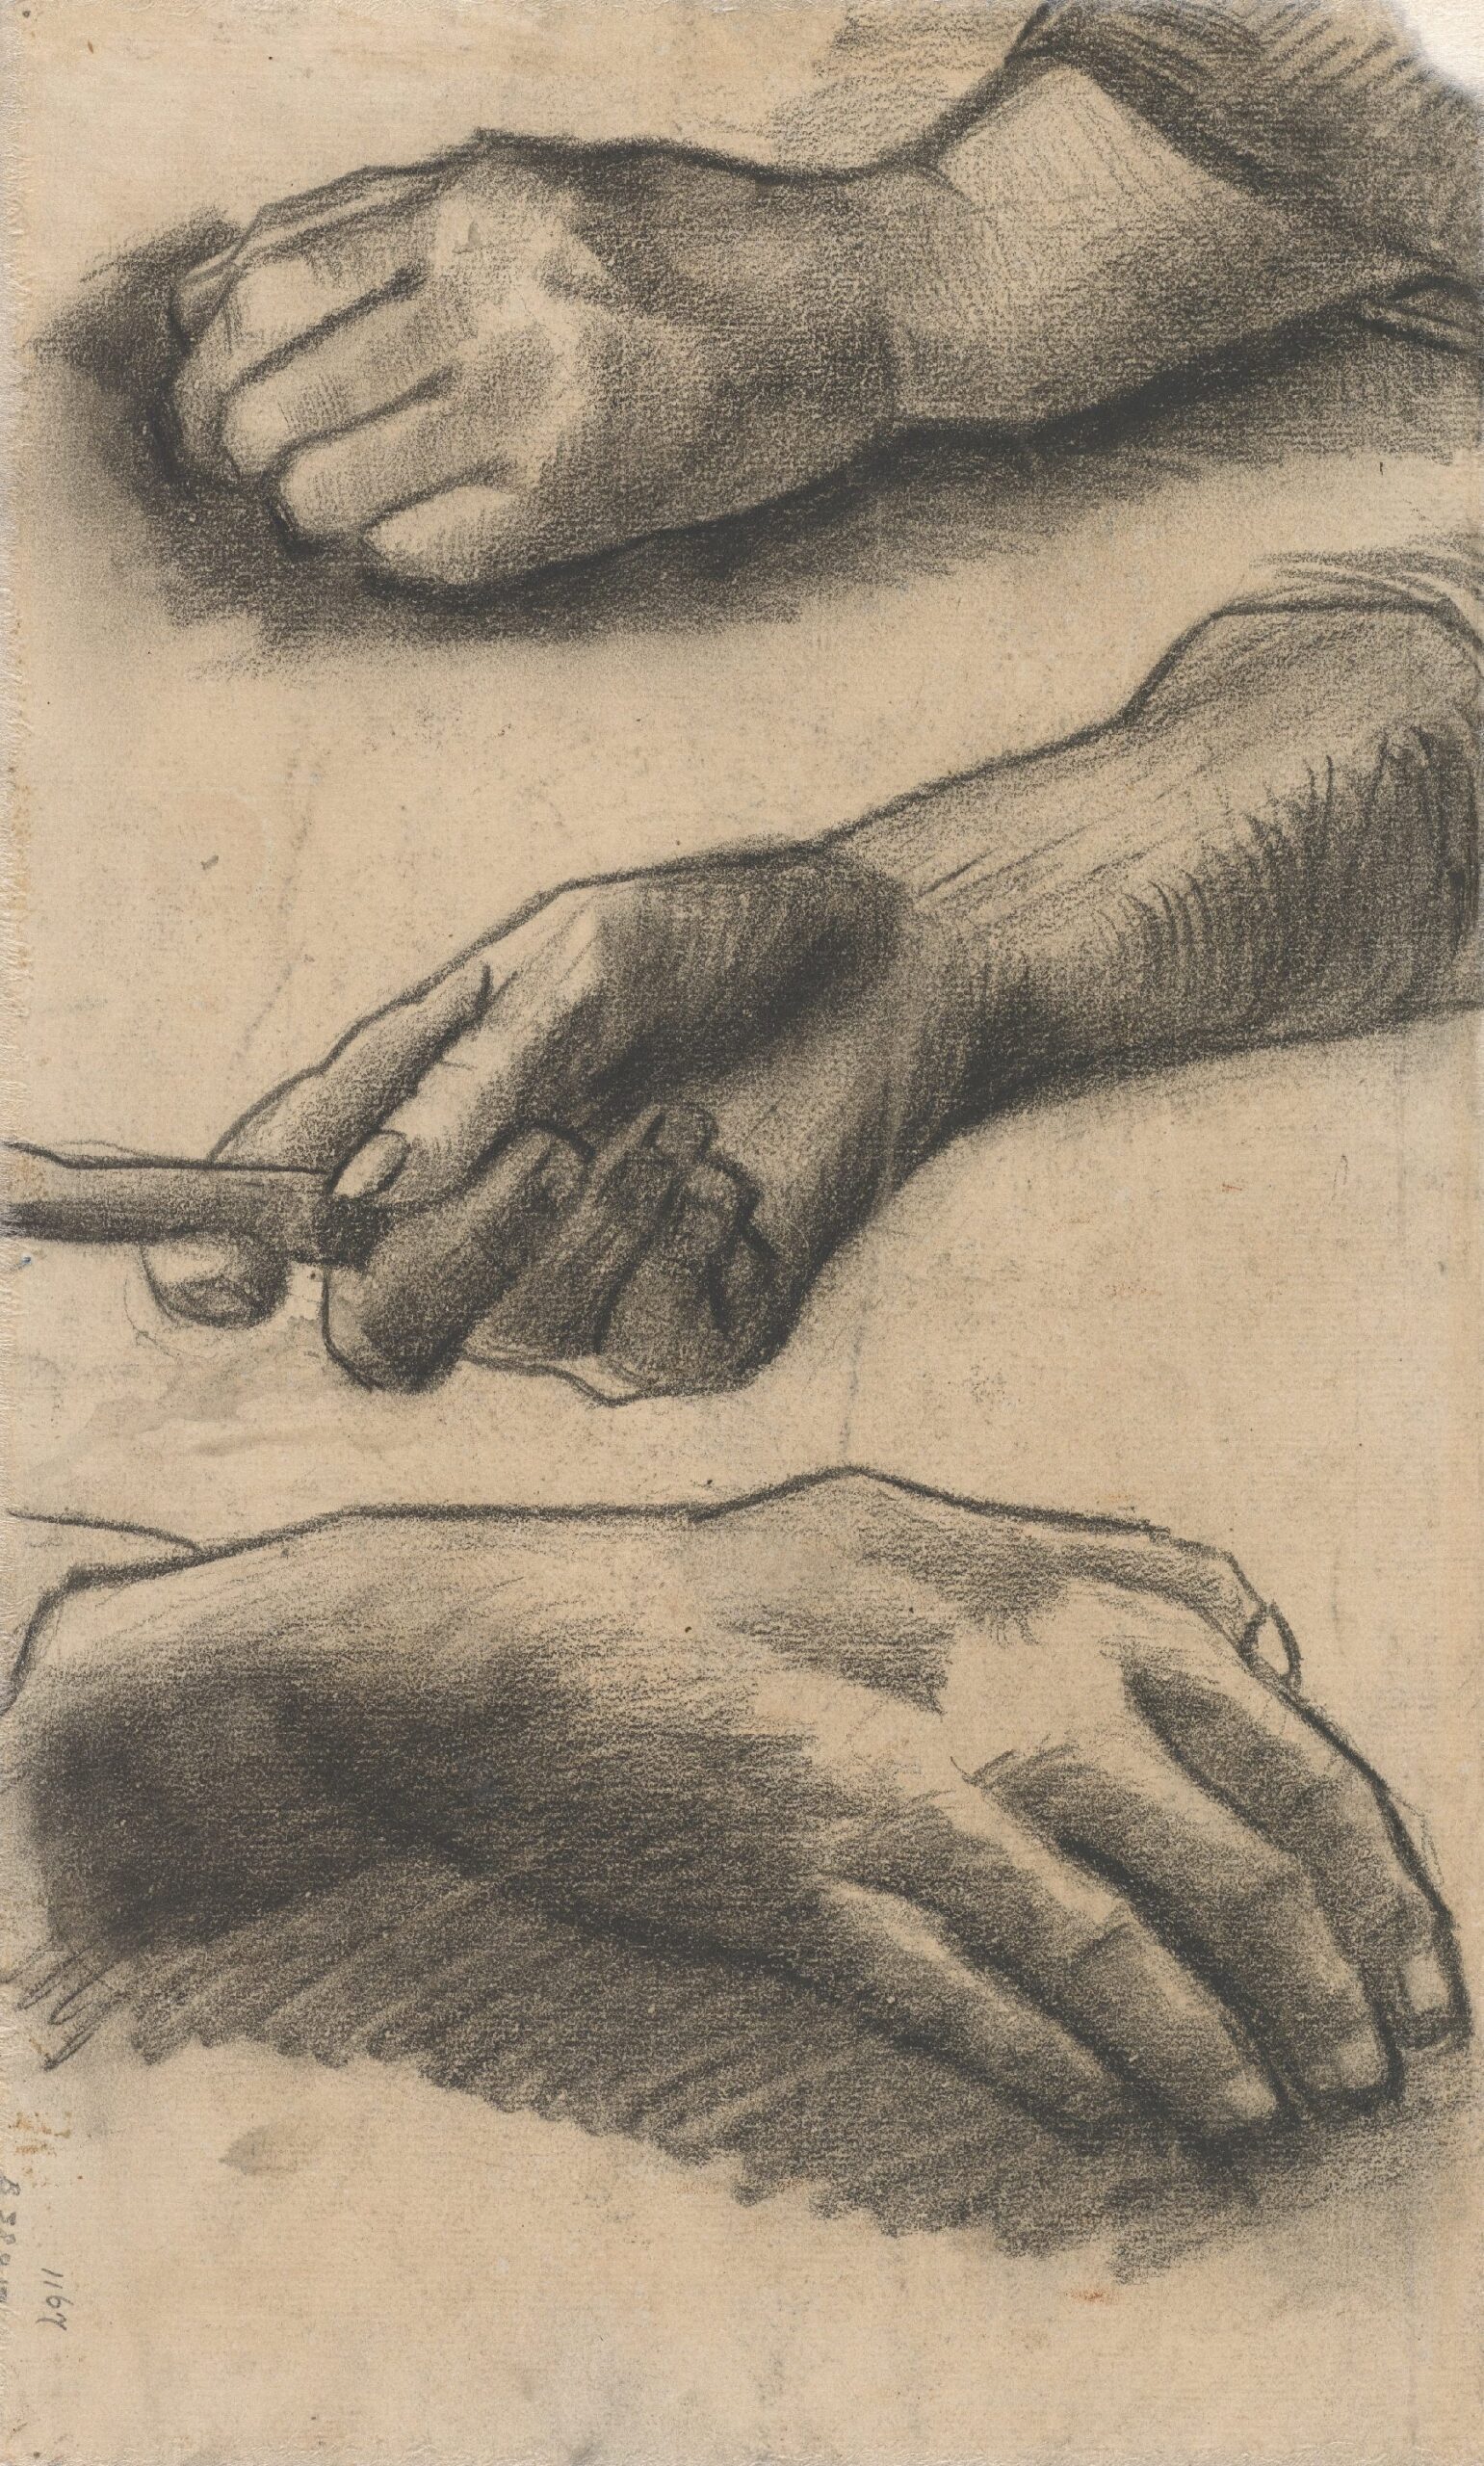 Drie handen Vincent van Gogh (1853 - 1890), Nuenen, december 1884-mei 1885